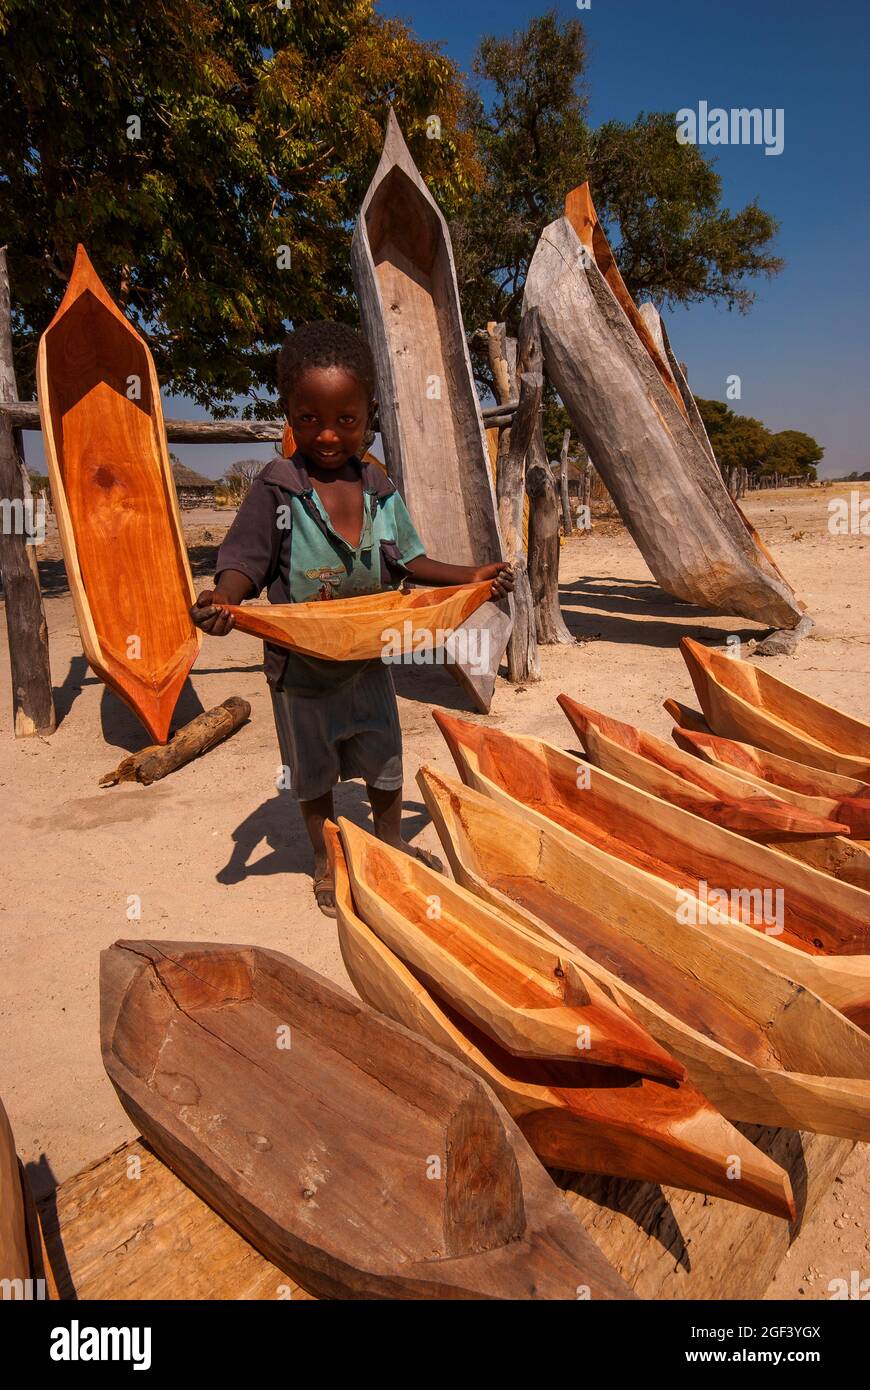 Piccolo ragazzo africano che mostra una varietà di mini mokoro barche in vendita come souvenir per i turisti, Caprivi Strip, Namibia Foto Stock